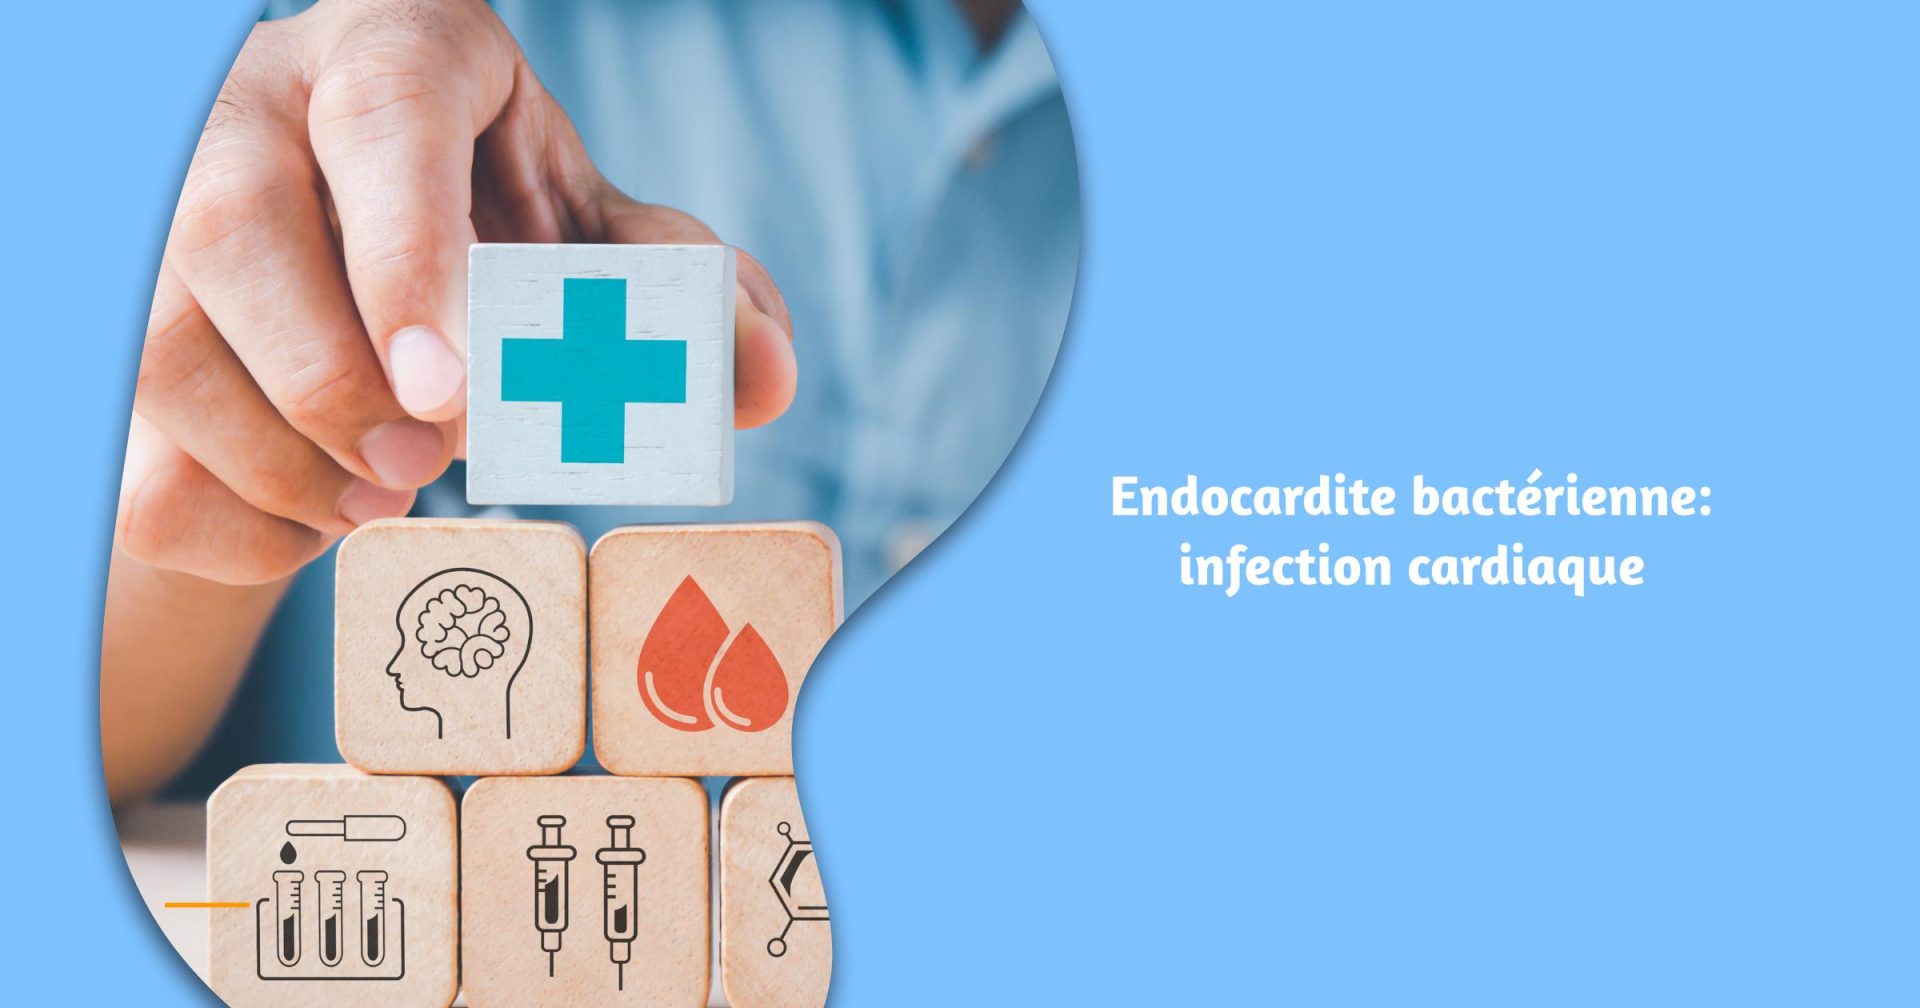 Endocardite bactérienne: infection cardiaque